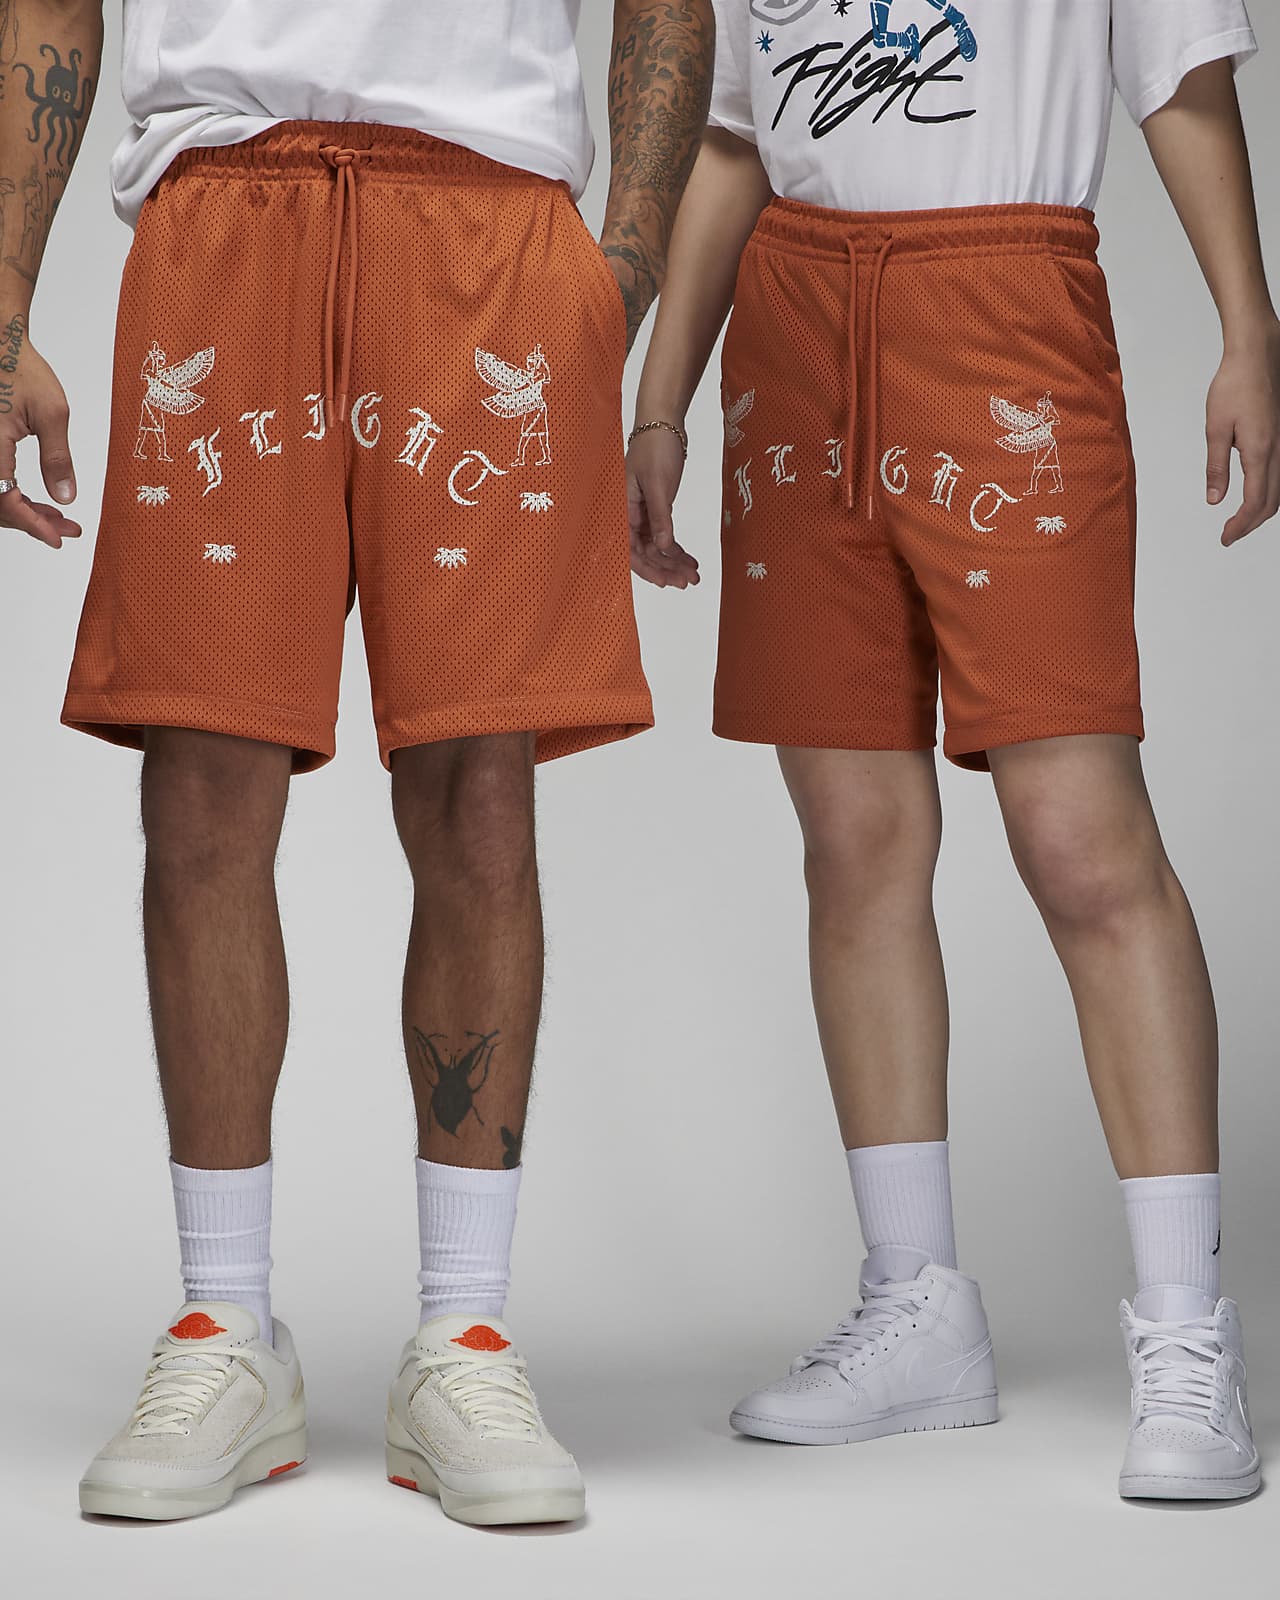 Sheer Shorts -  Canada